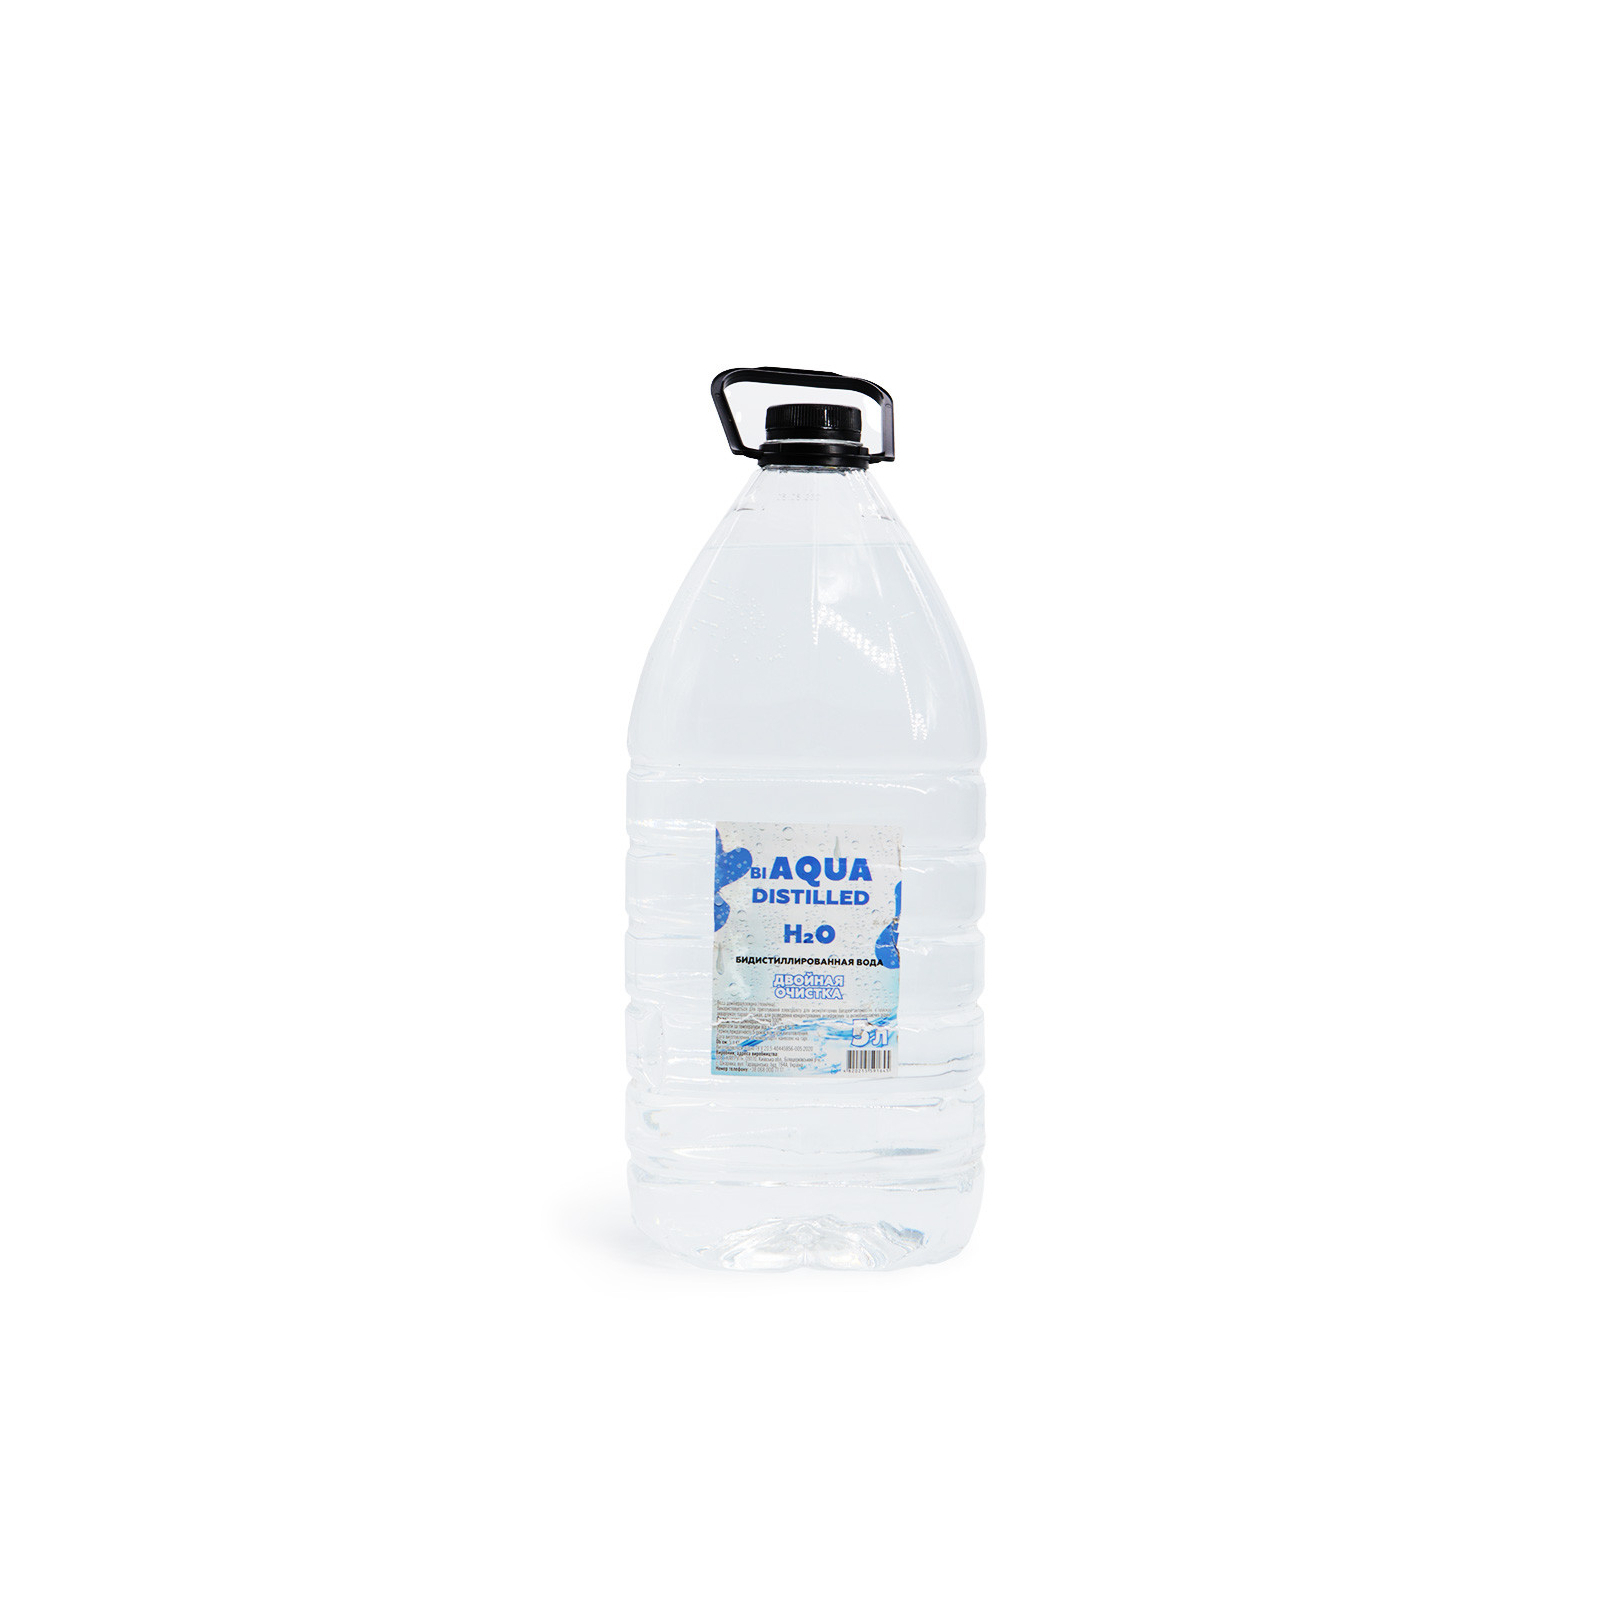 Вода дистиллированная Bi Aqua 5л